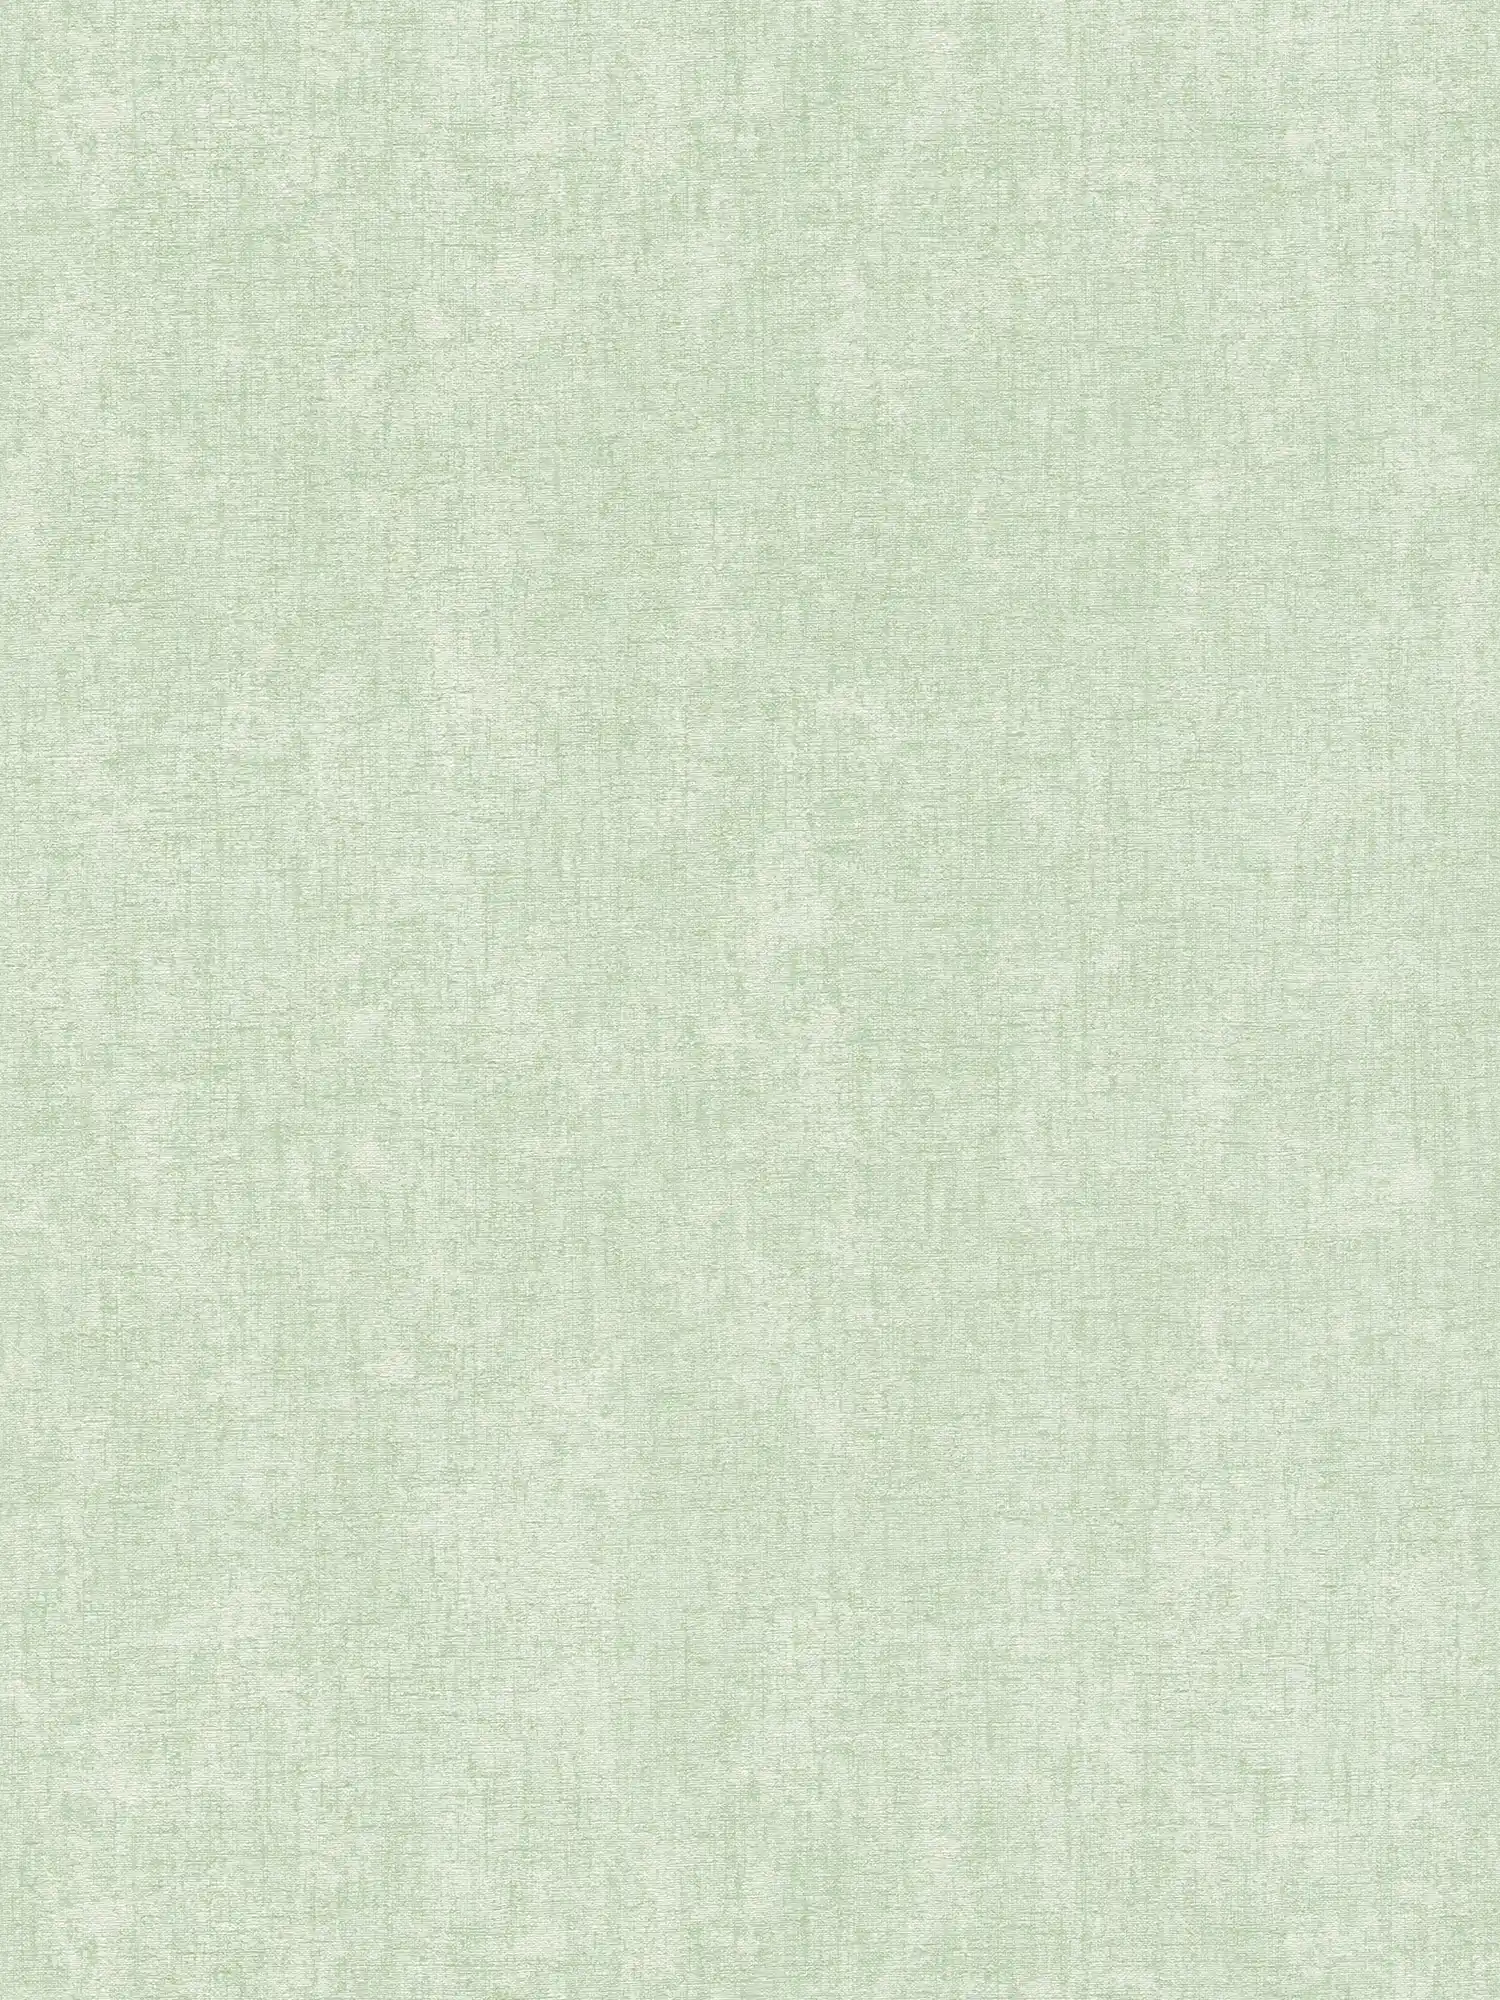 Mint green wallpaper plain with texture details - green
